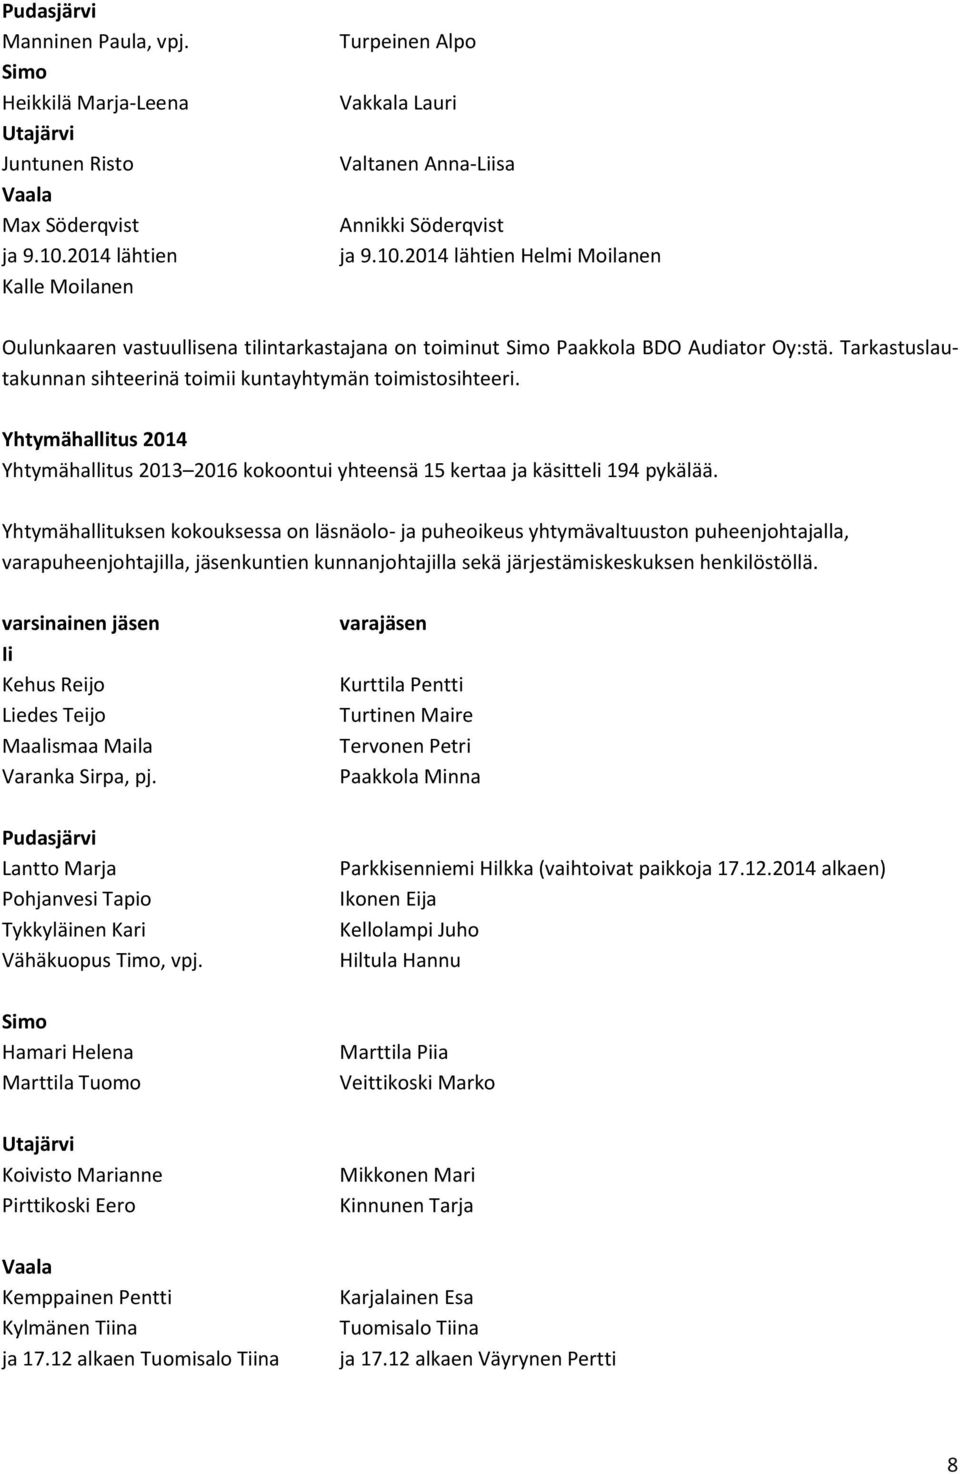 2014 lähtien Helmi Moilanen Oulunkaaren vastuullisena tilintarkastajana on toiminut Simo Paakkola BDO Audiator Oy:stä. Tarkastuslautakunnan sihteerinä toimii kuntayhtymän toimistosihteeri.